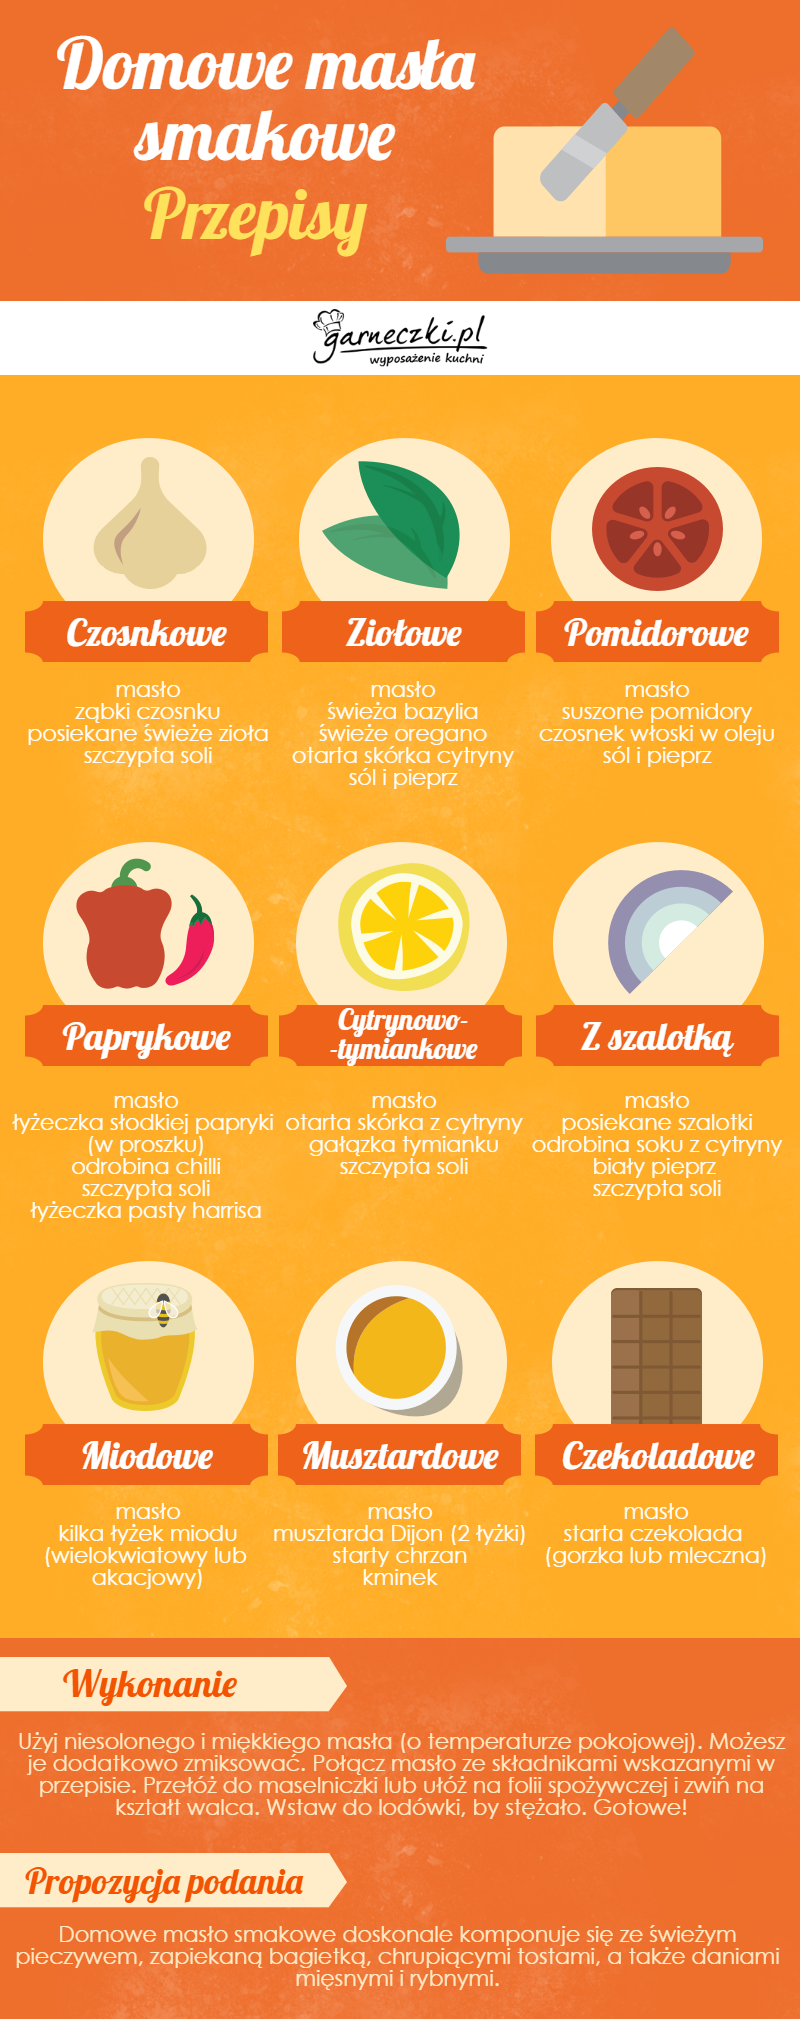 Masła smakowe przepisy - infografika